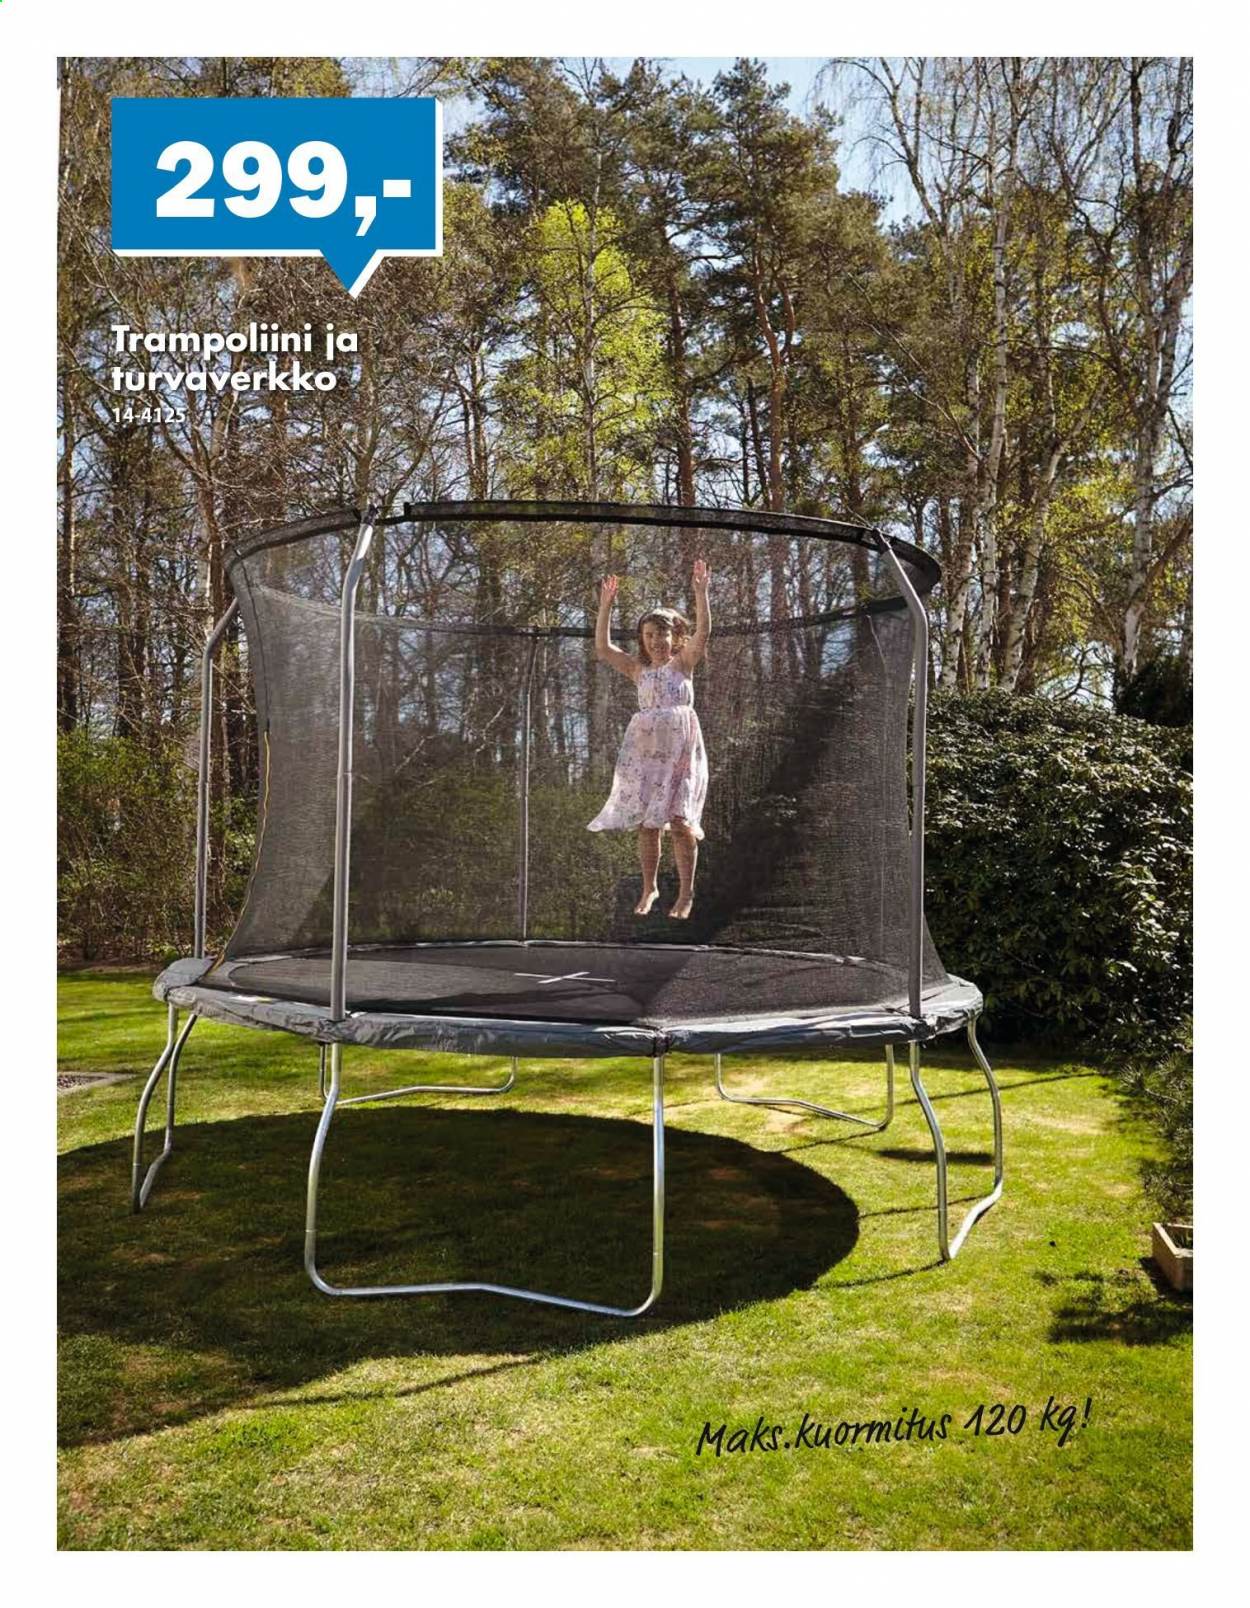 Biltema tarjoukset  - 31.03.2021 - 04.04.2021 - Tarjoustuotteet - trampoliini. Sivu 2.